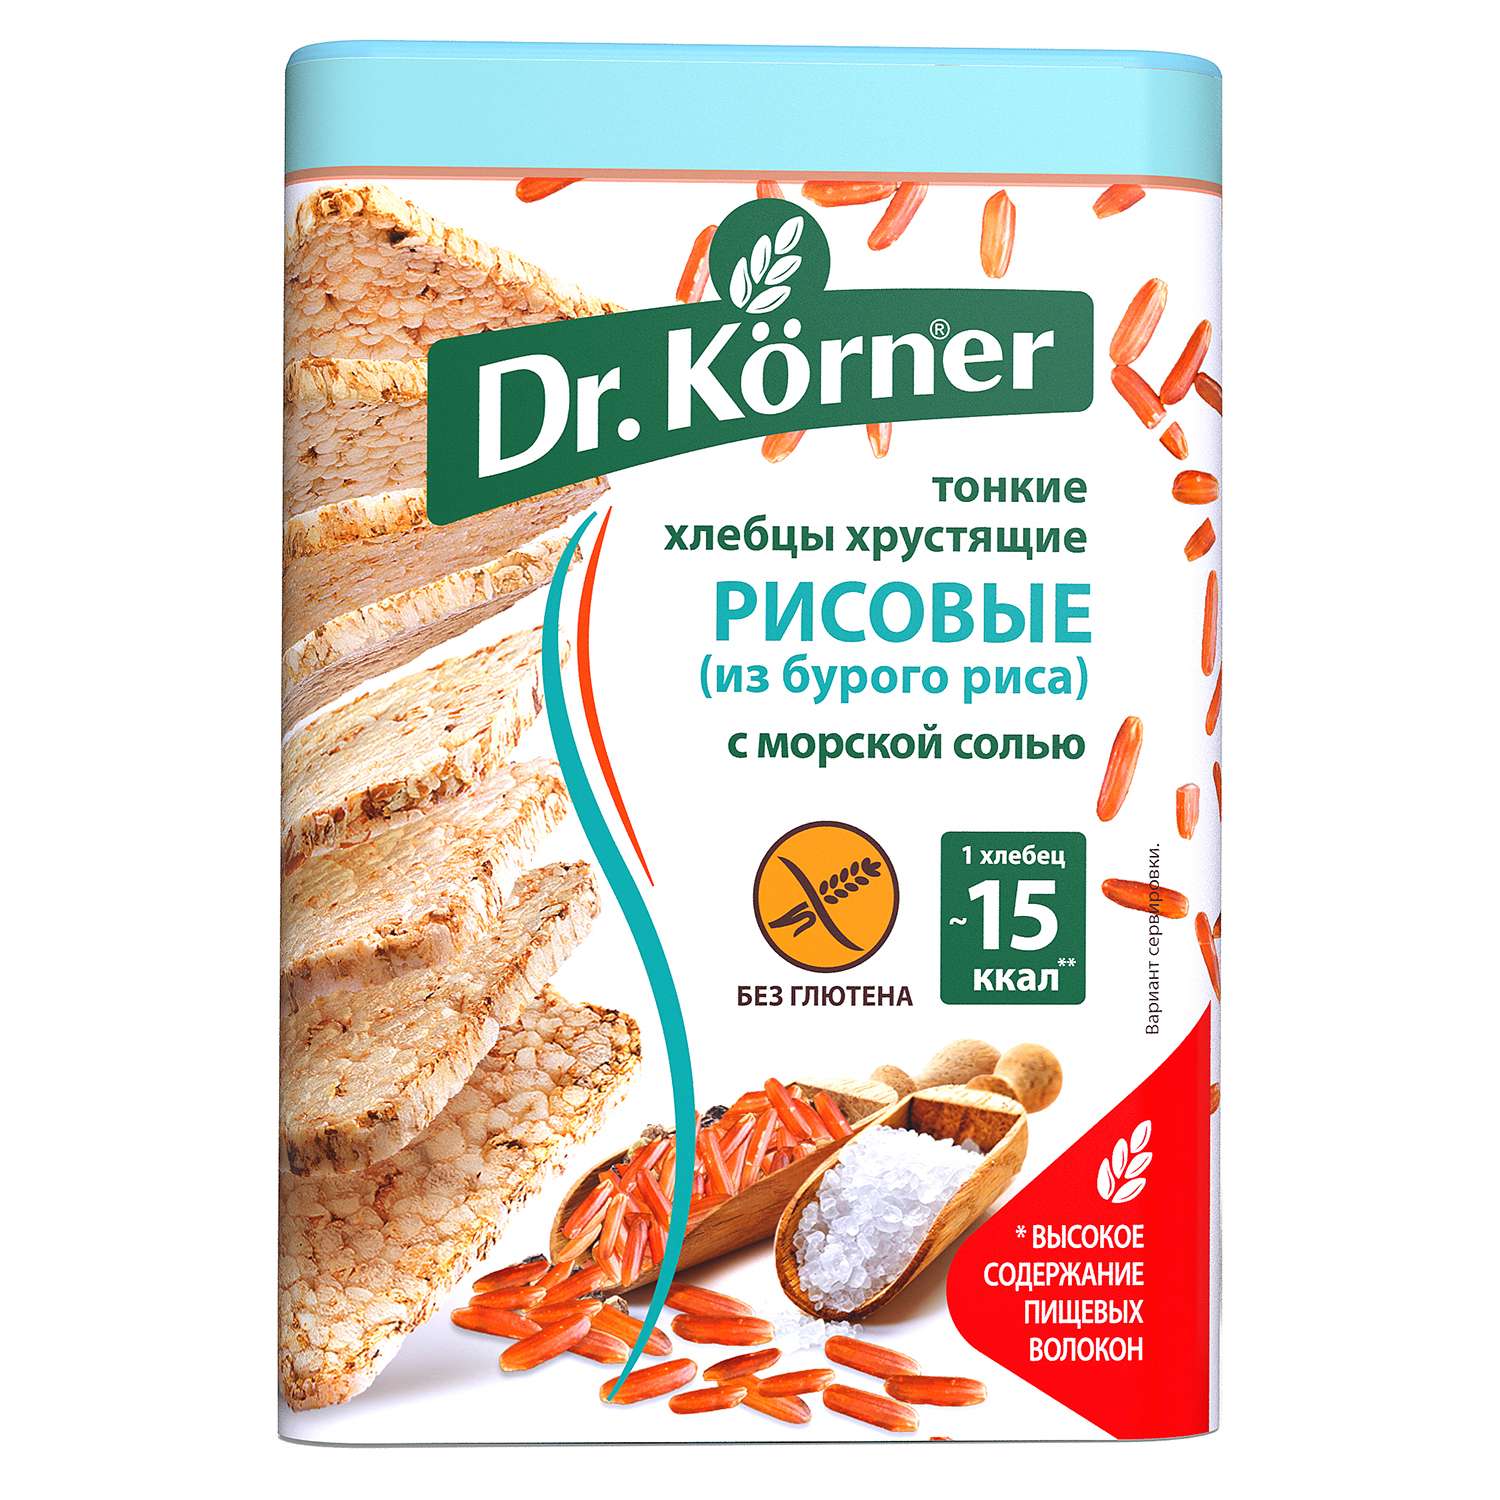 Хлебцы Dr. Korner рисовые из бурого риса с морской солью без глютена 100г - фото 1